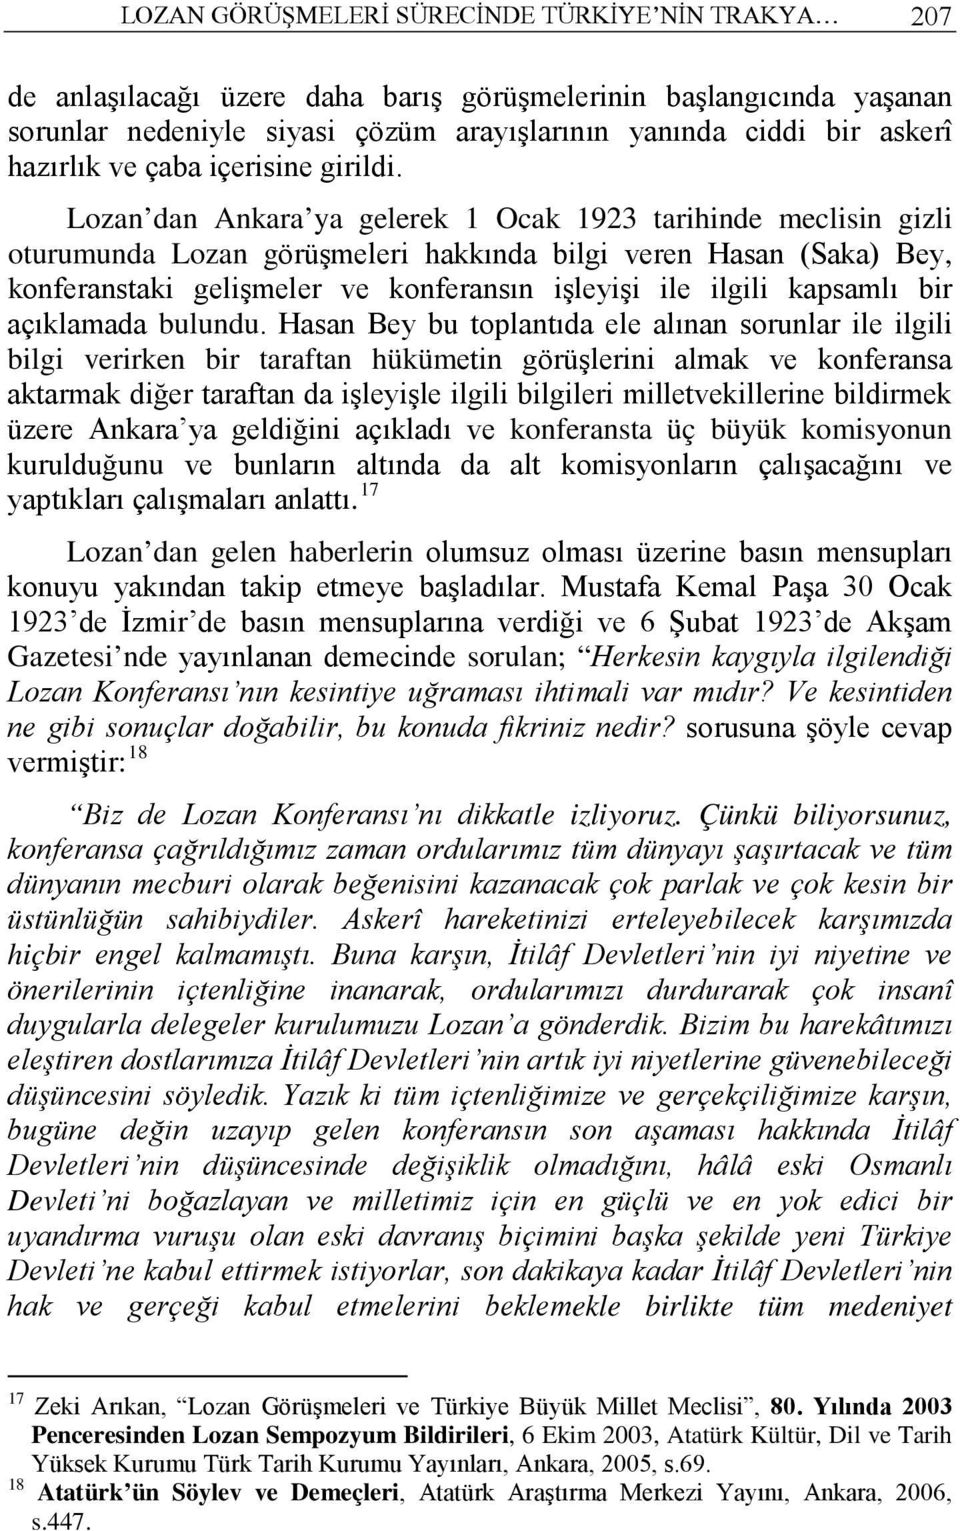 Lozan dan Ankara ya gelerek 1 Ocak 1923 tarihinde meclisin gizli oturumunda Lozan görüşmeleri hakkında bilgi veren Hasan (Saka) Bey, konferanstaki gelişmeler ve konferansın işleyişi ile ilgili